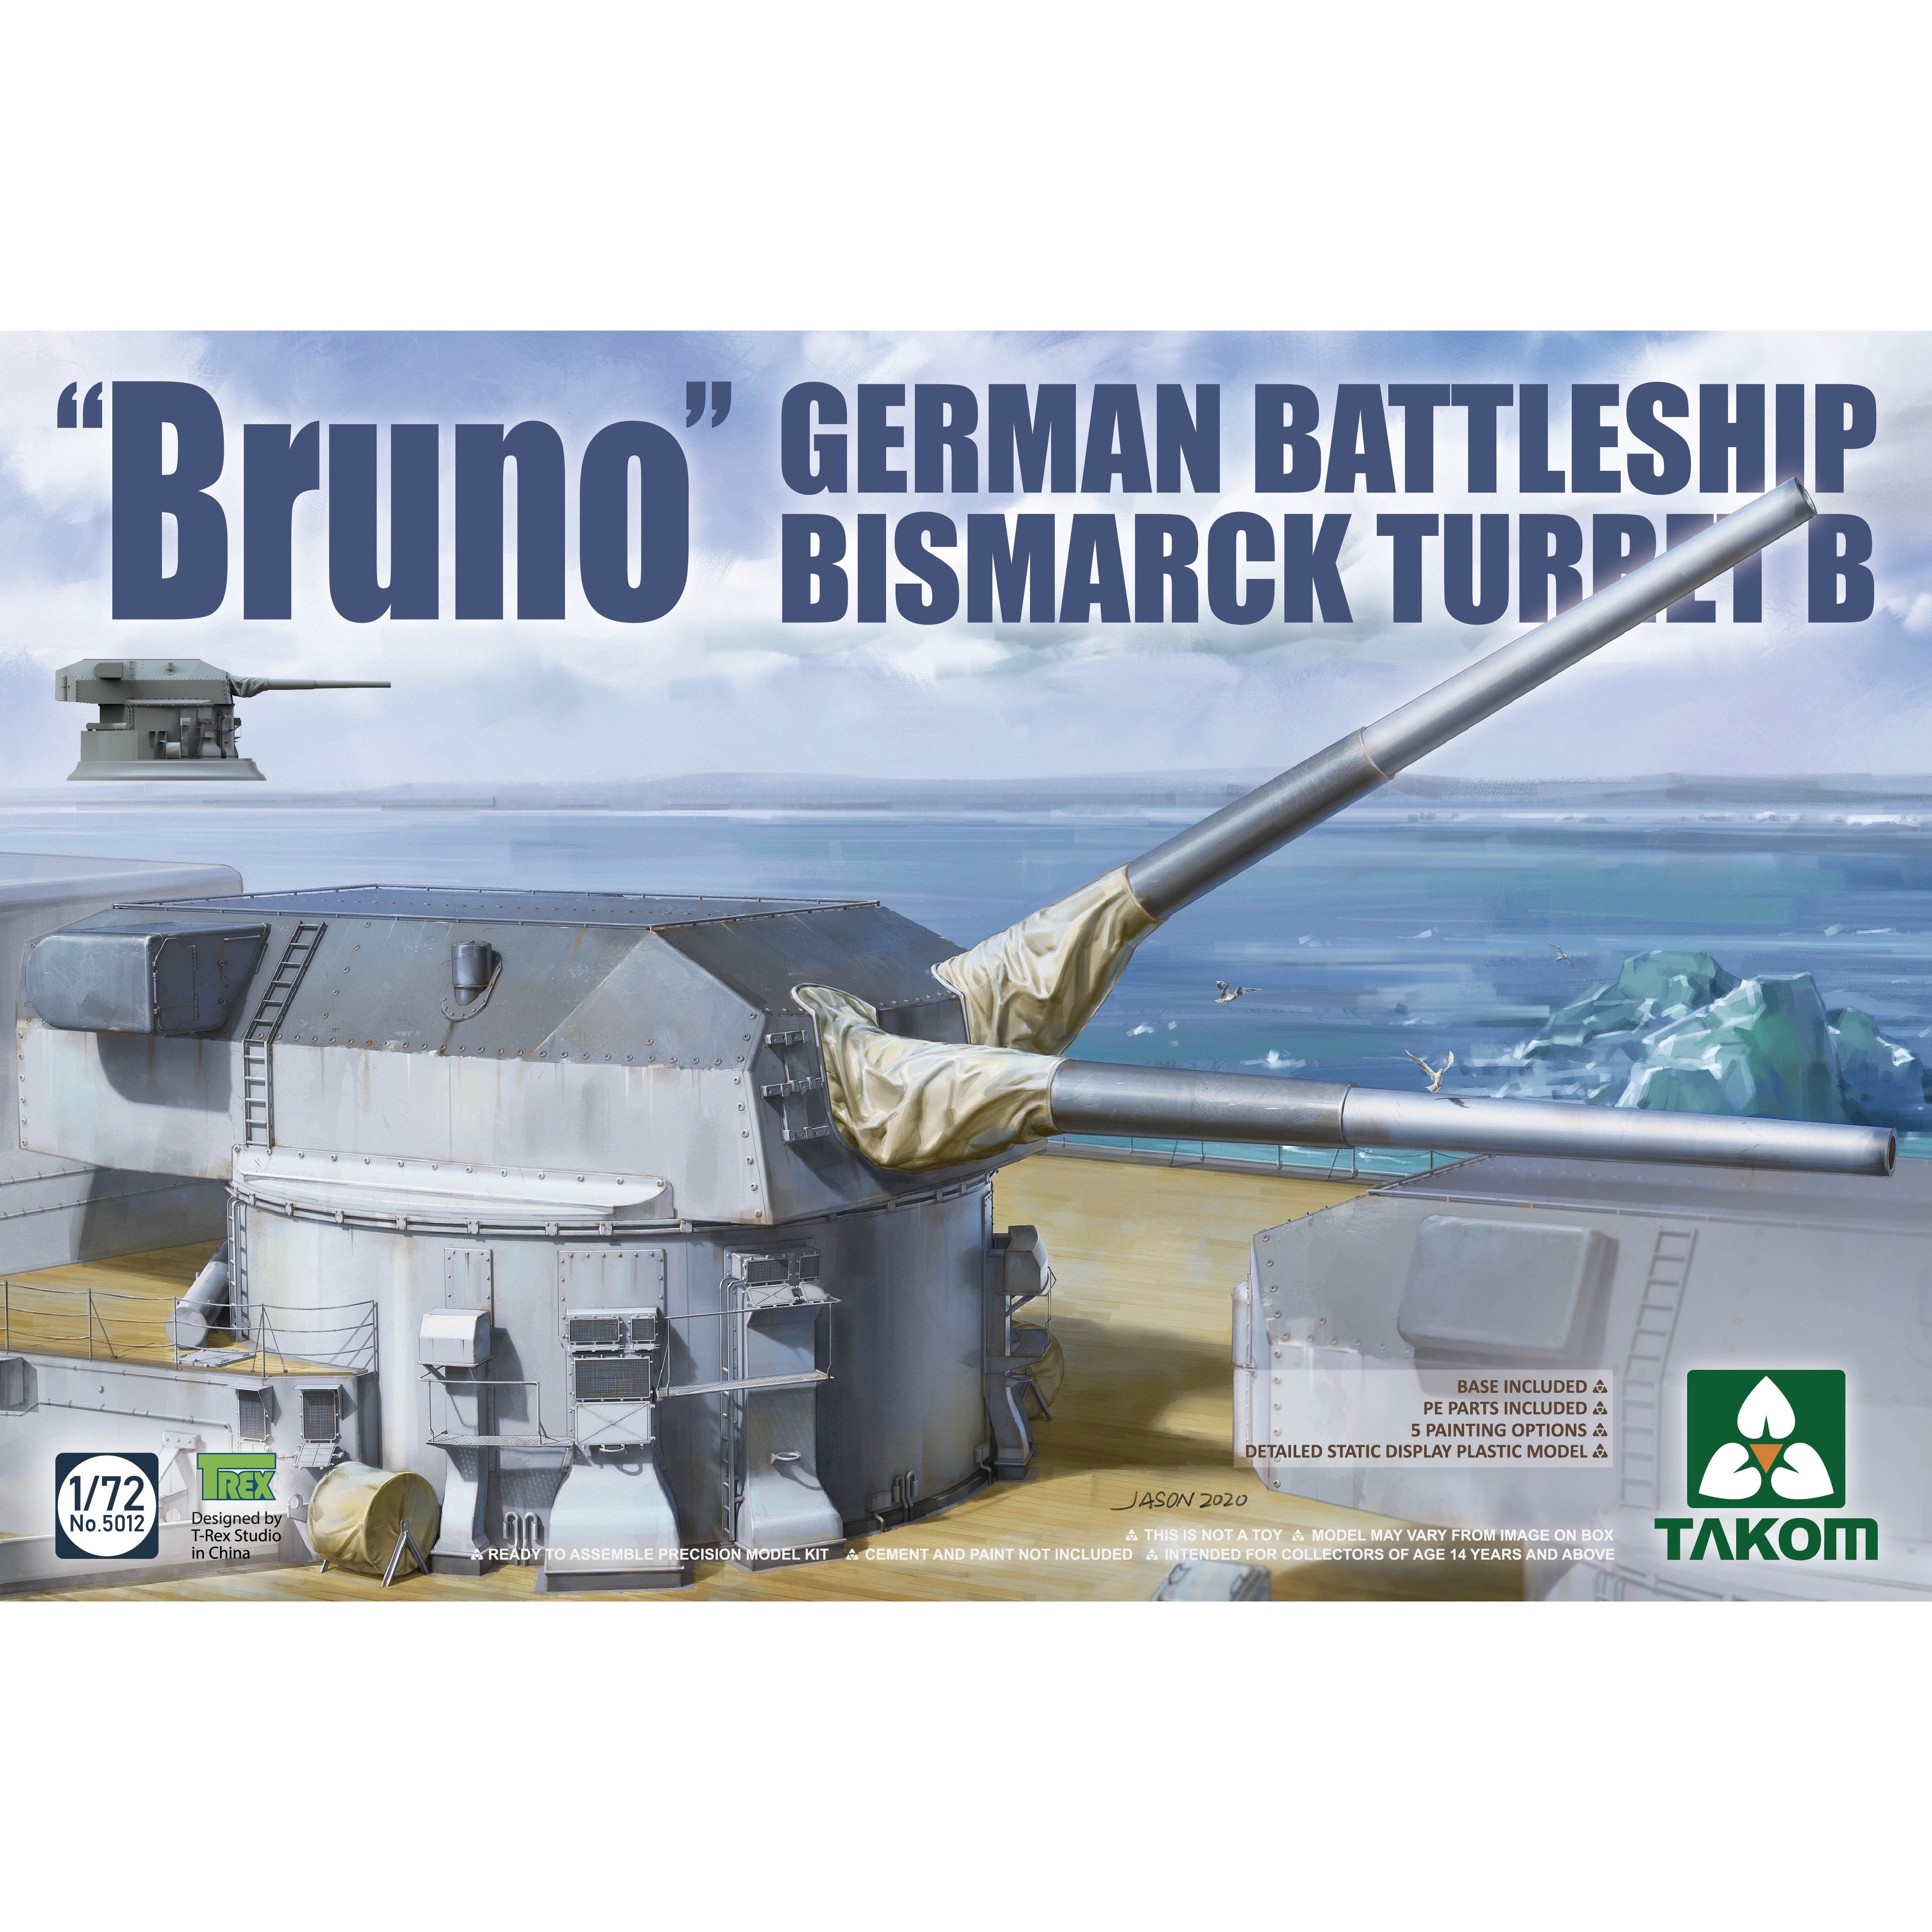 German Battleship Bismark Turret B "Bruno" 1/72 #5012 by Takom